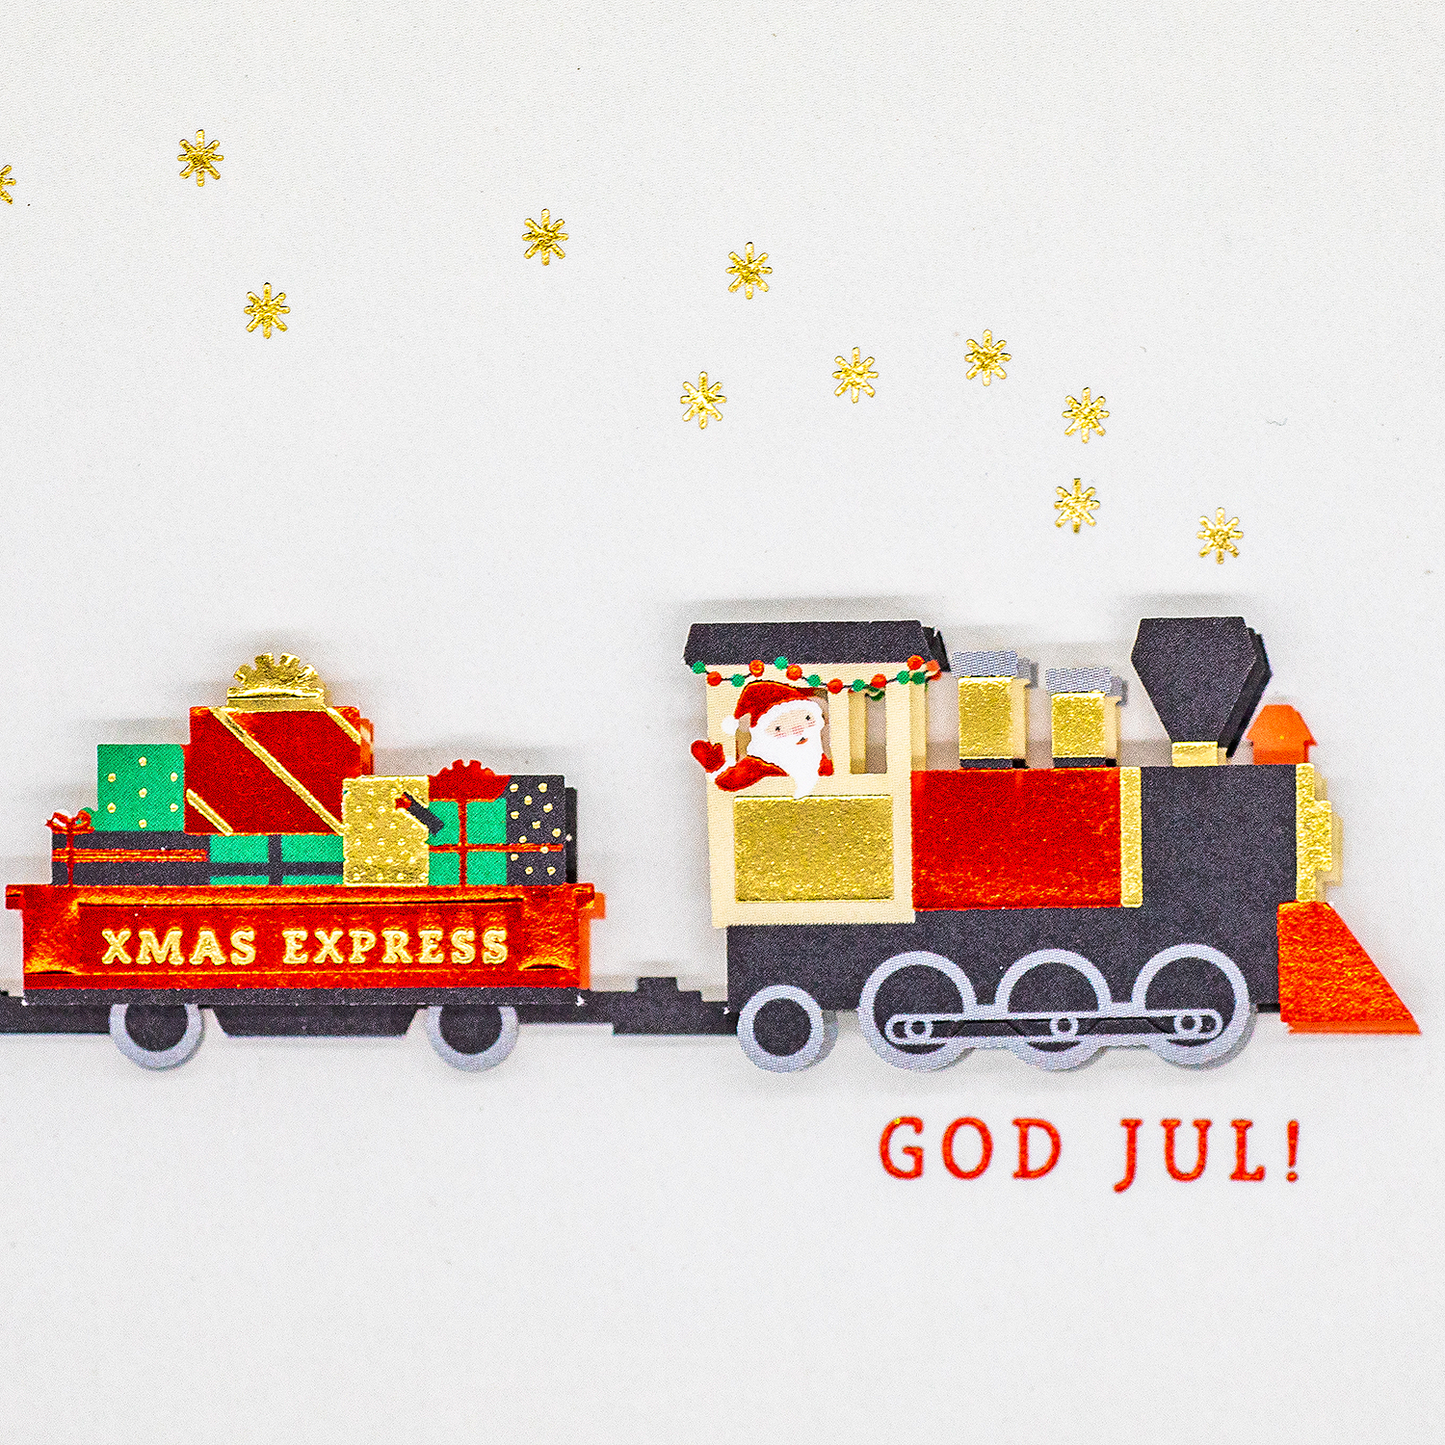 Kopia av 3D Julkort - Jultåg